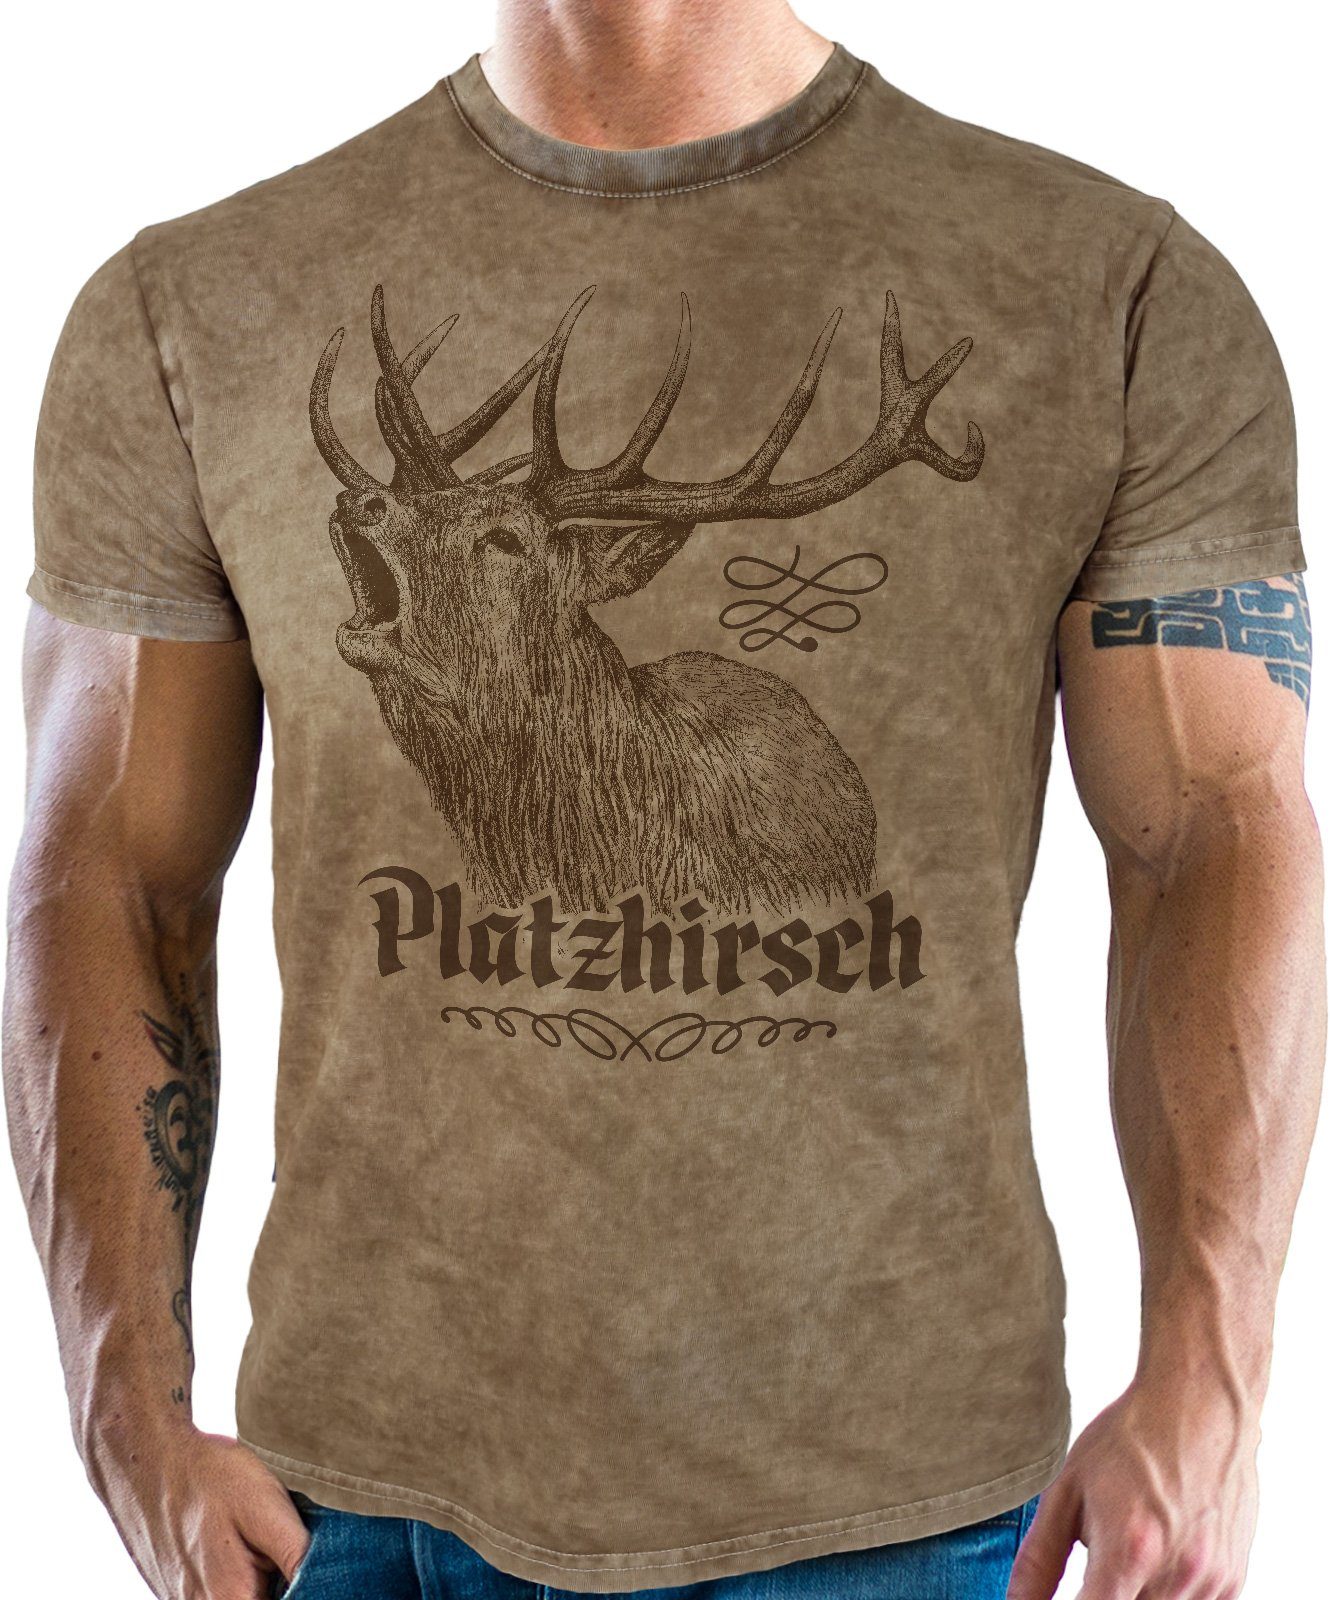 LOBO NEGRO® Trachtenshirt für echte im Fans vintage retro used Look: Platzhirsch washed Bayern